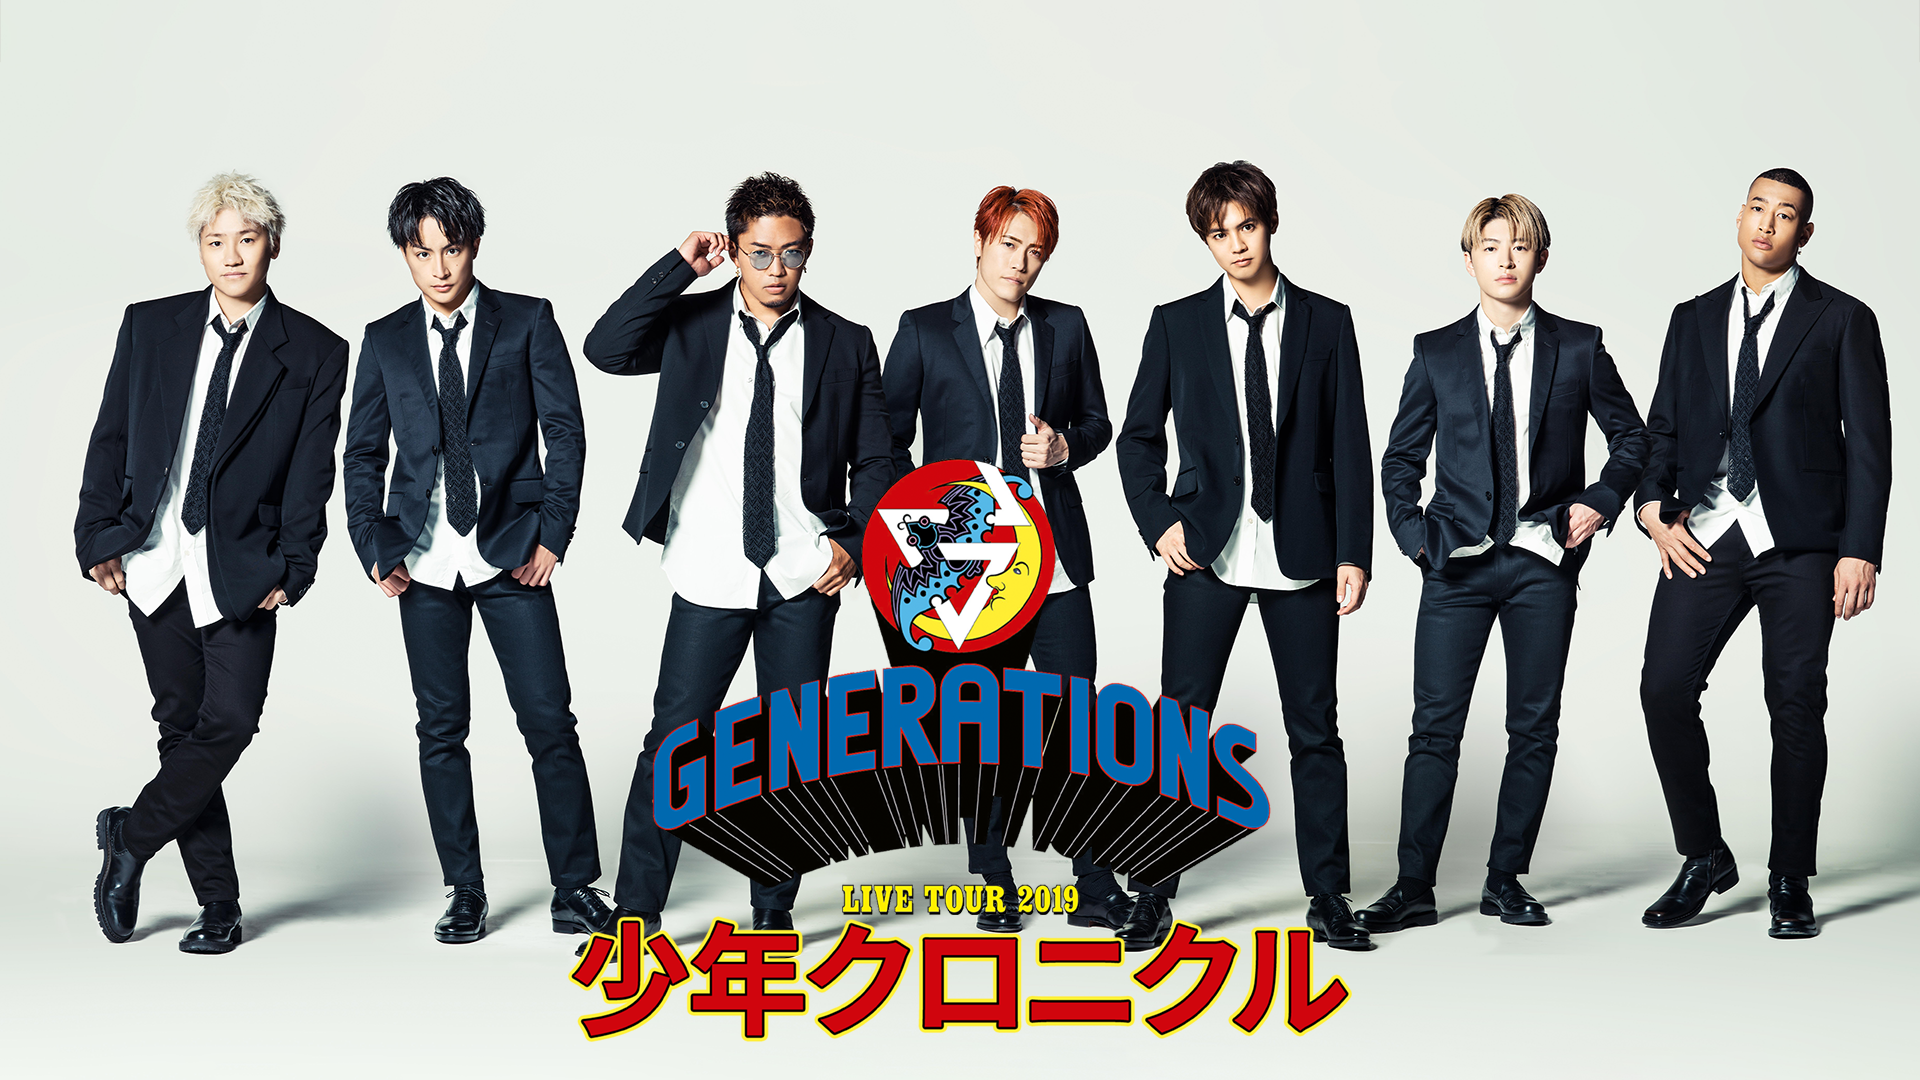 GENERATIONS LIVE TOUR 2019 